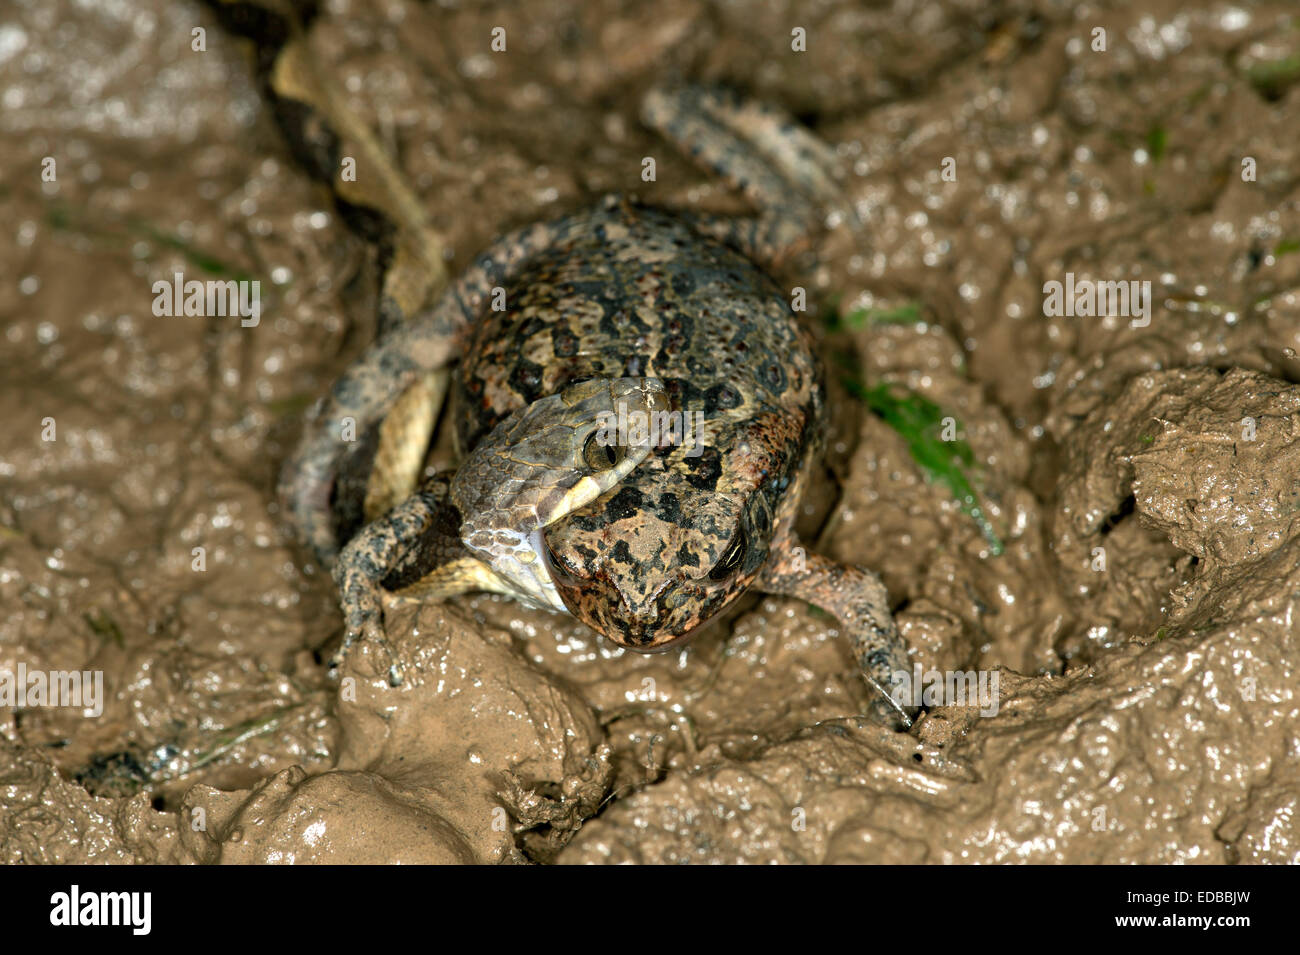 Nastrare il cat-eyed snake (Leptodeira annulata) aver catturato una rana, Tambopata National Reserve, di Madre de Dios, Perù Foto Stock